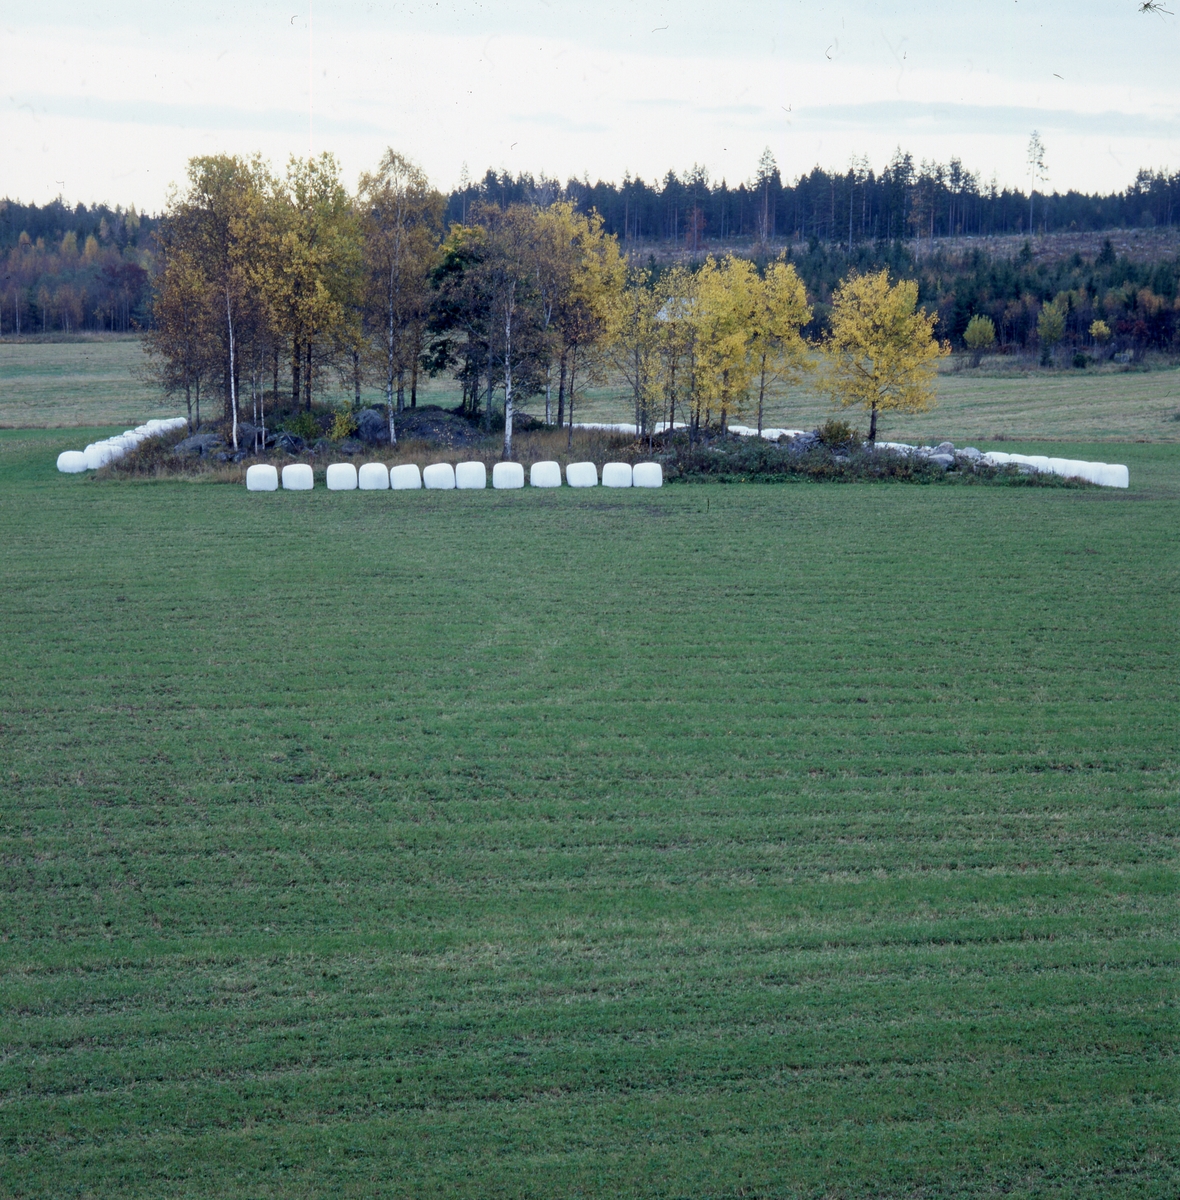 Rader av ensilagebalar i vit plast, "bonnägg", ligger runt en träddunge mitt på en åker, hösten 2001.